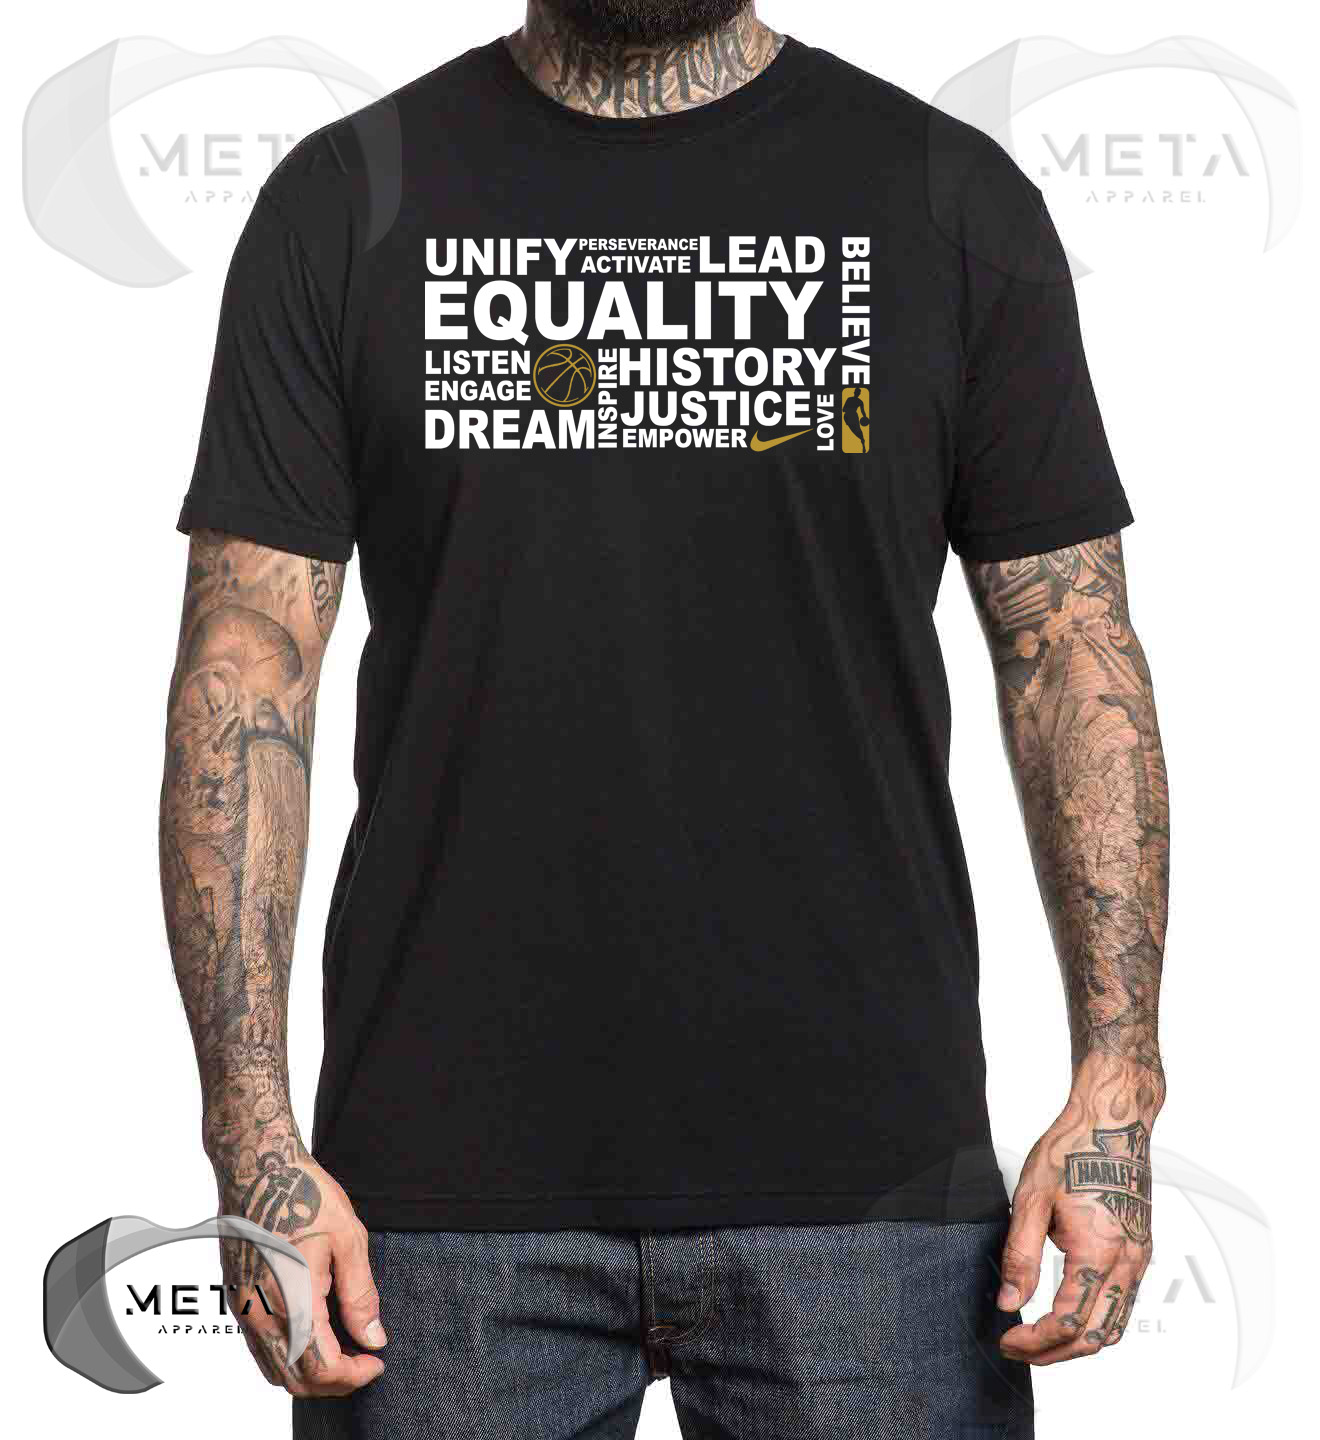 nike nba equality t shirt